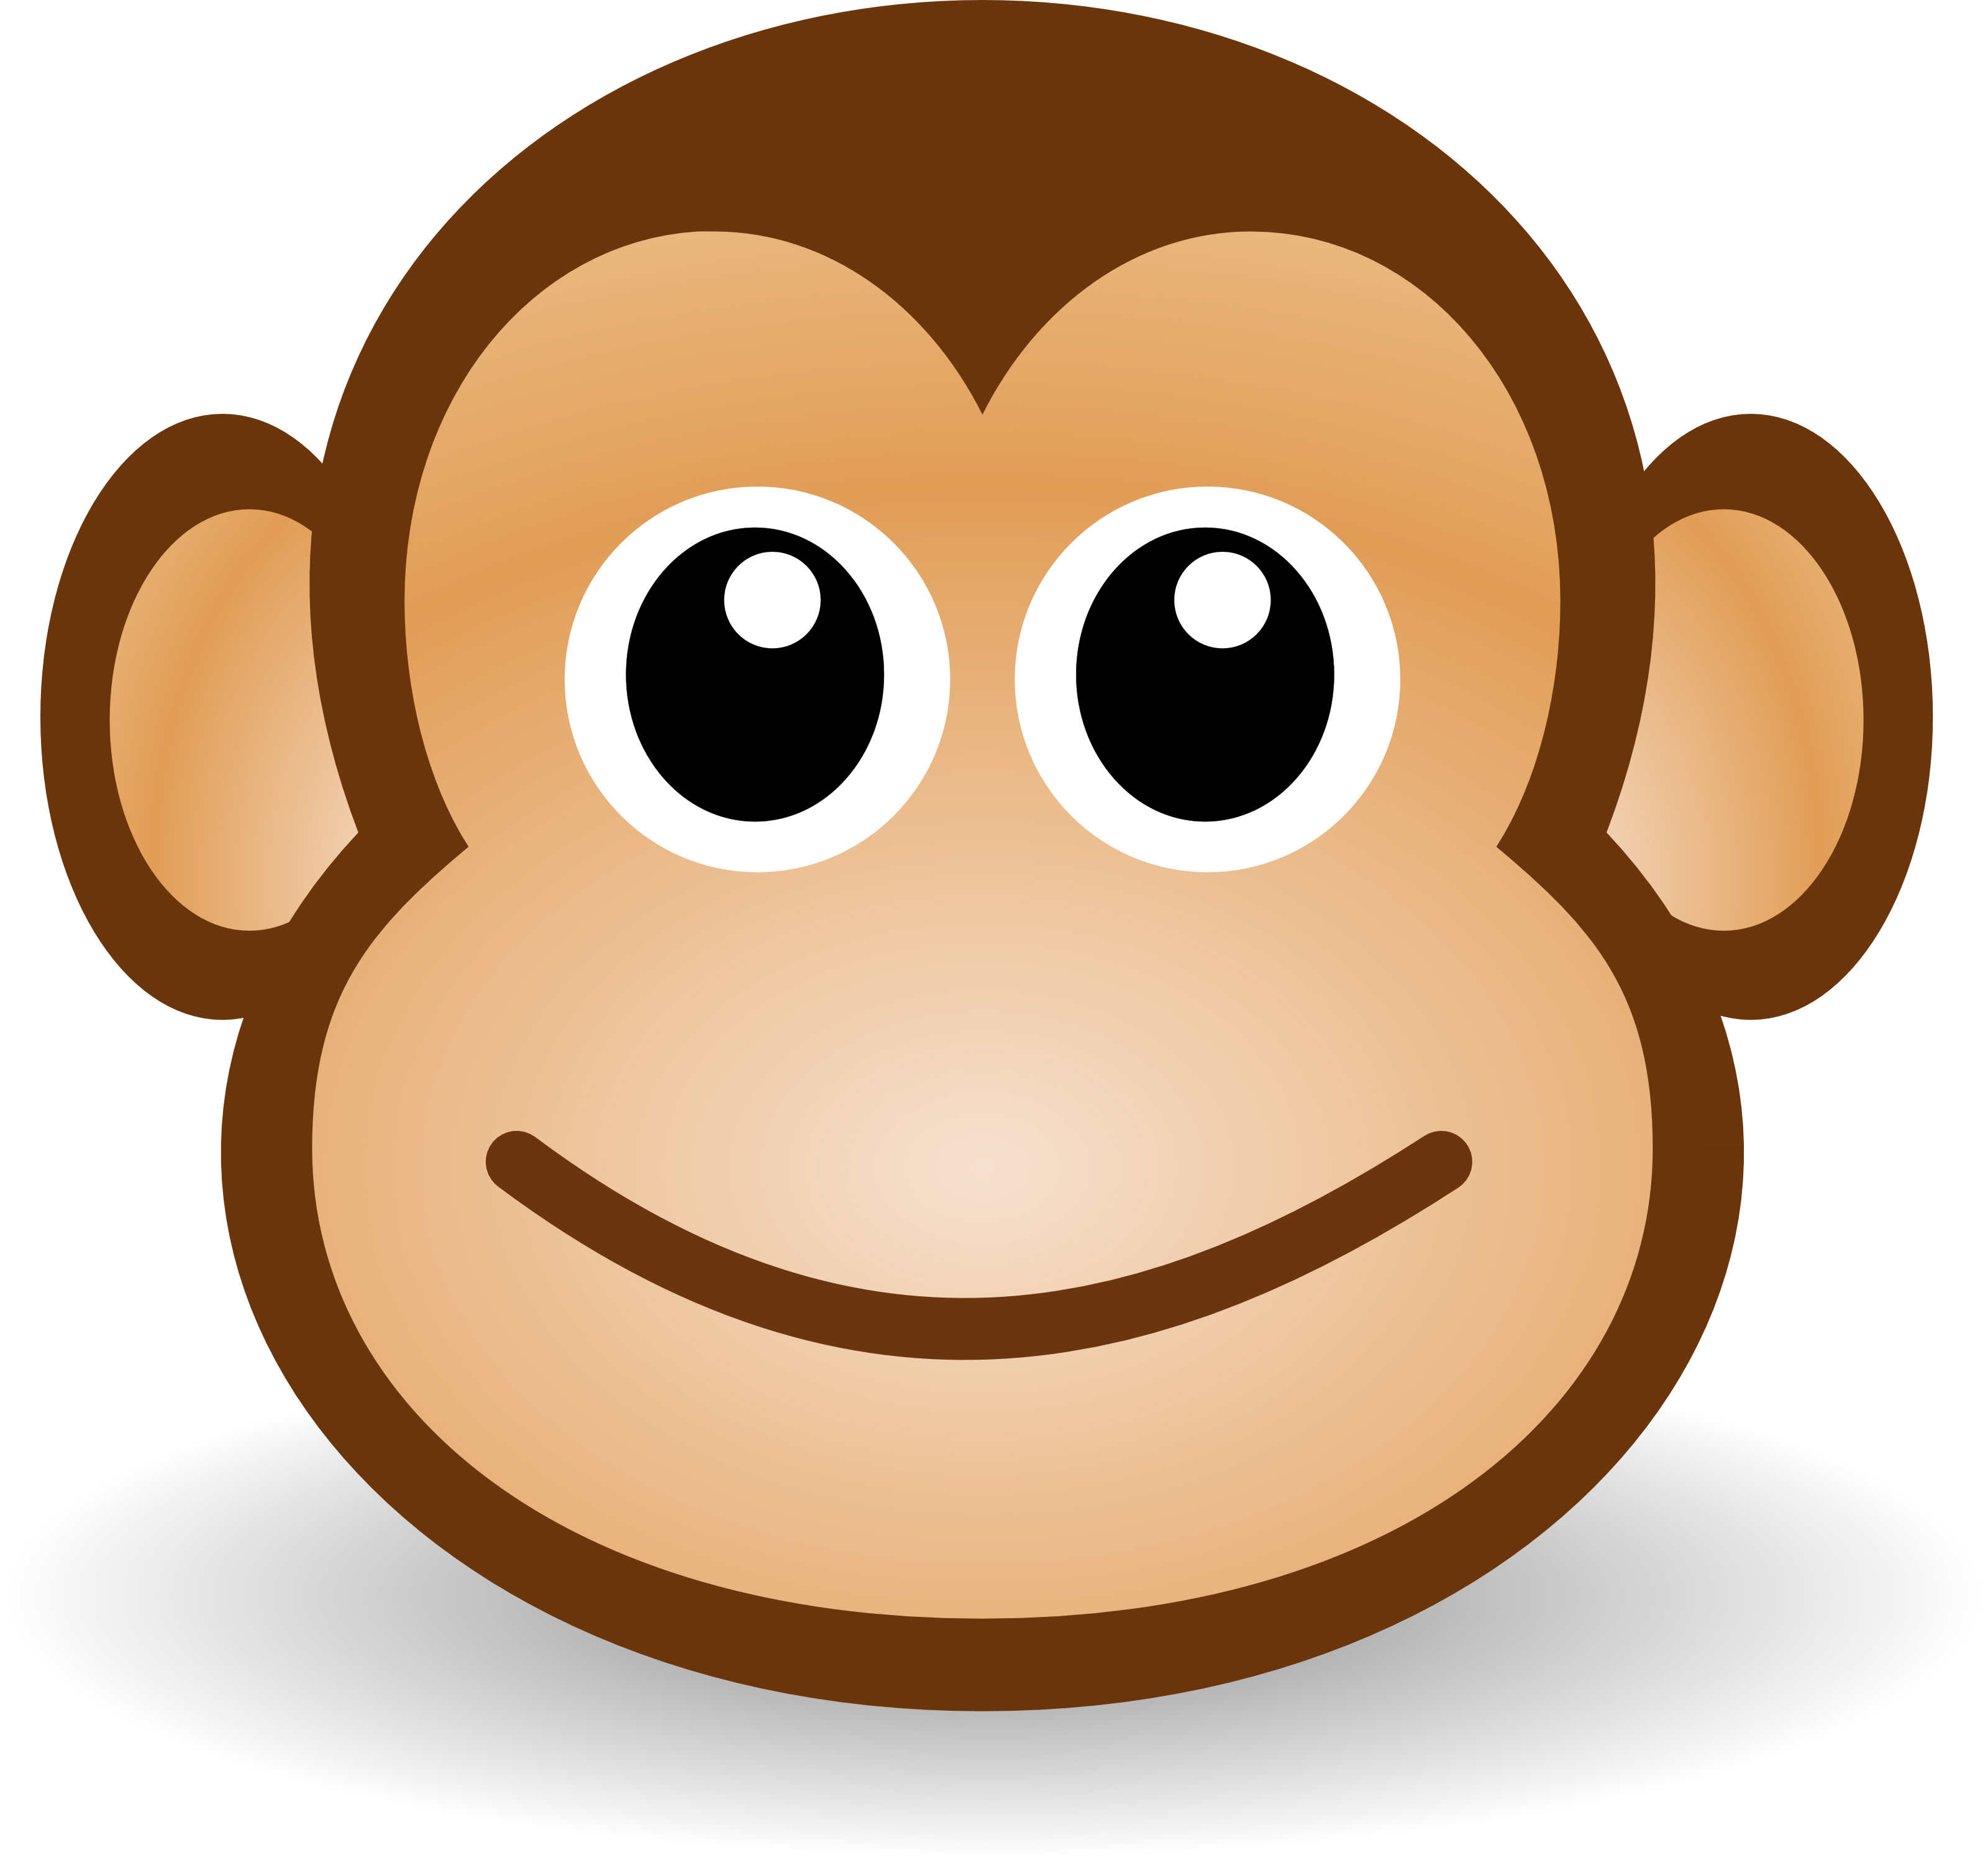 6 Animated Monkey Emoticons Images